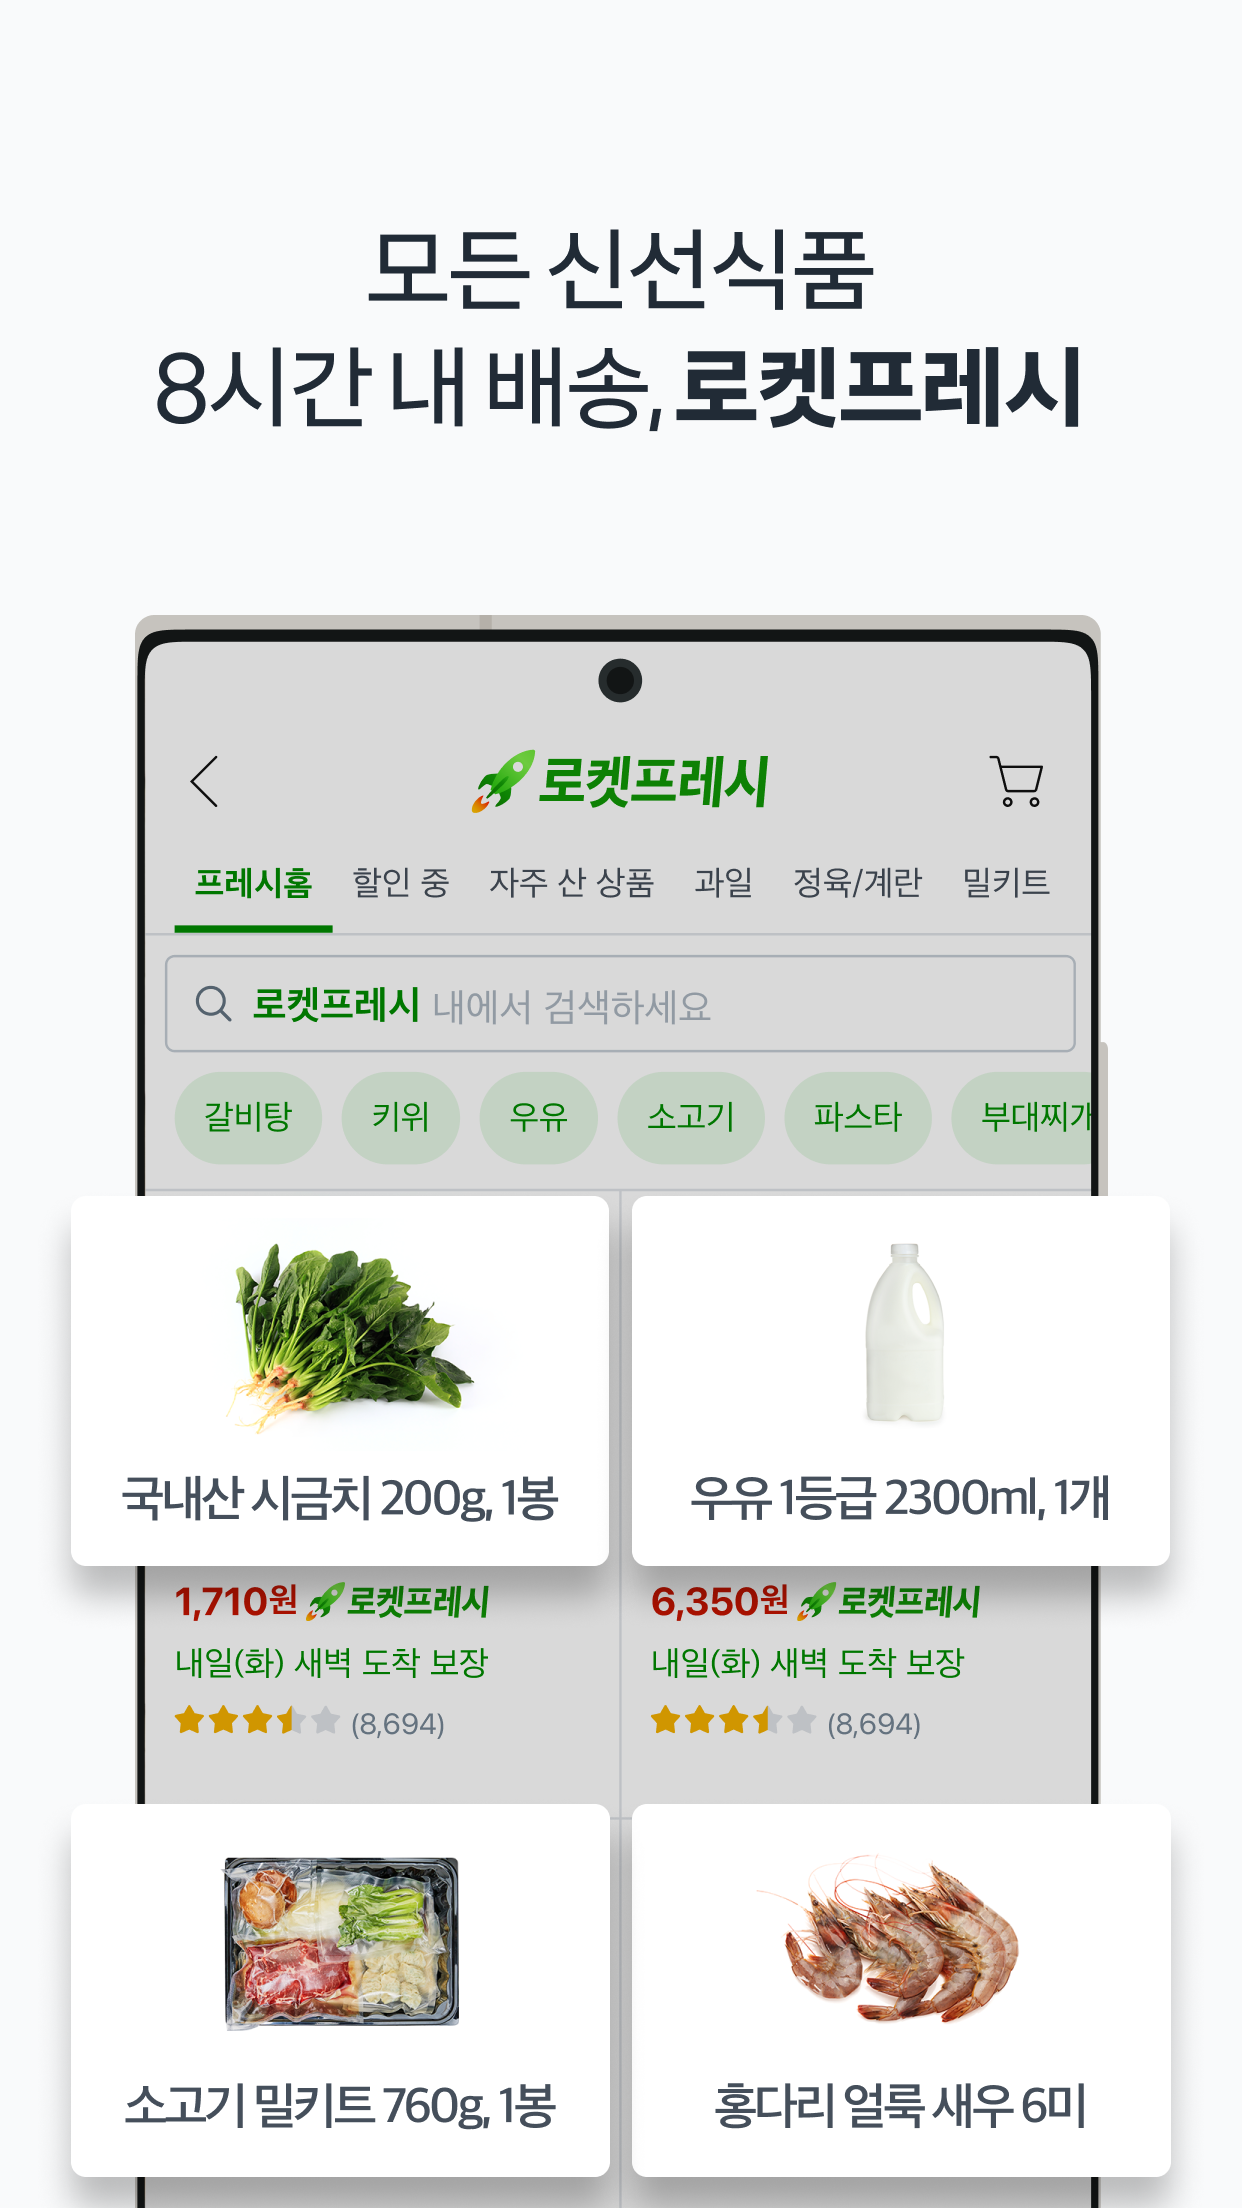 Android application 쿠팡 (Coupang) screenshort